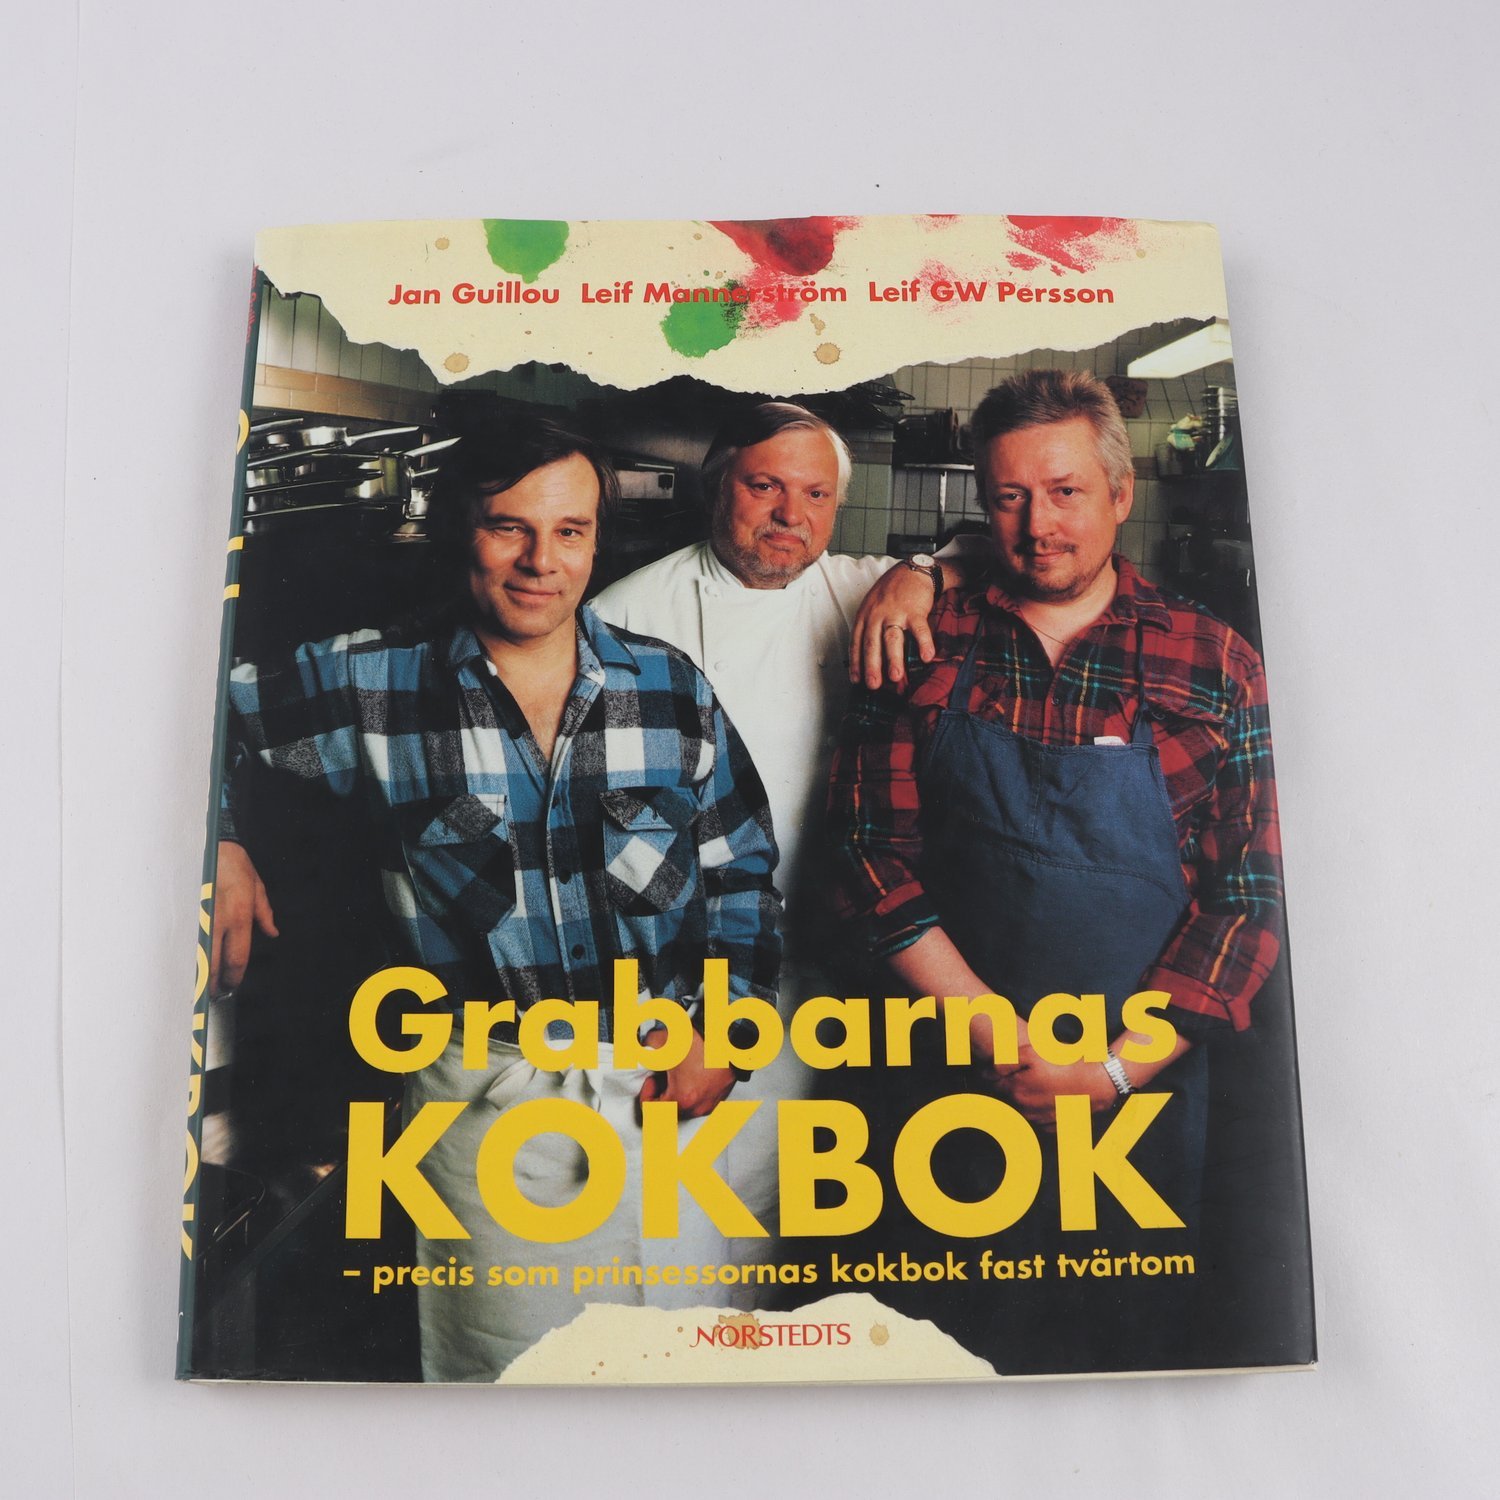 Grabbarnas kokbok, Jan Guillou, Leif Mannerström & Leif GW Persson